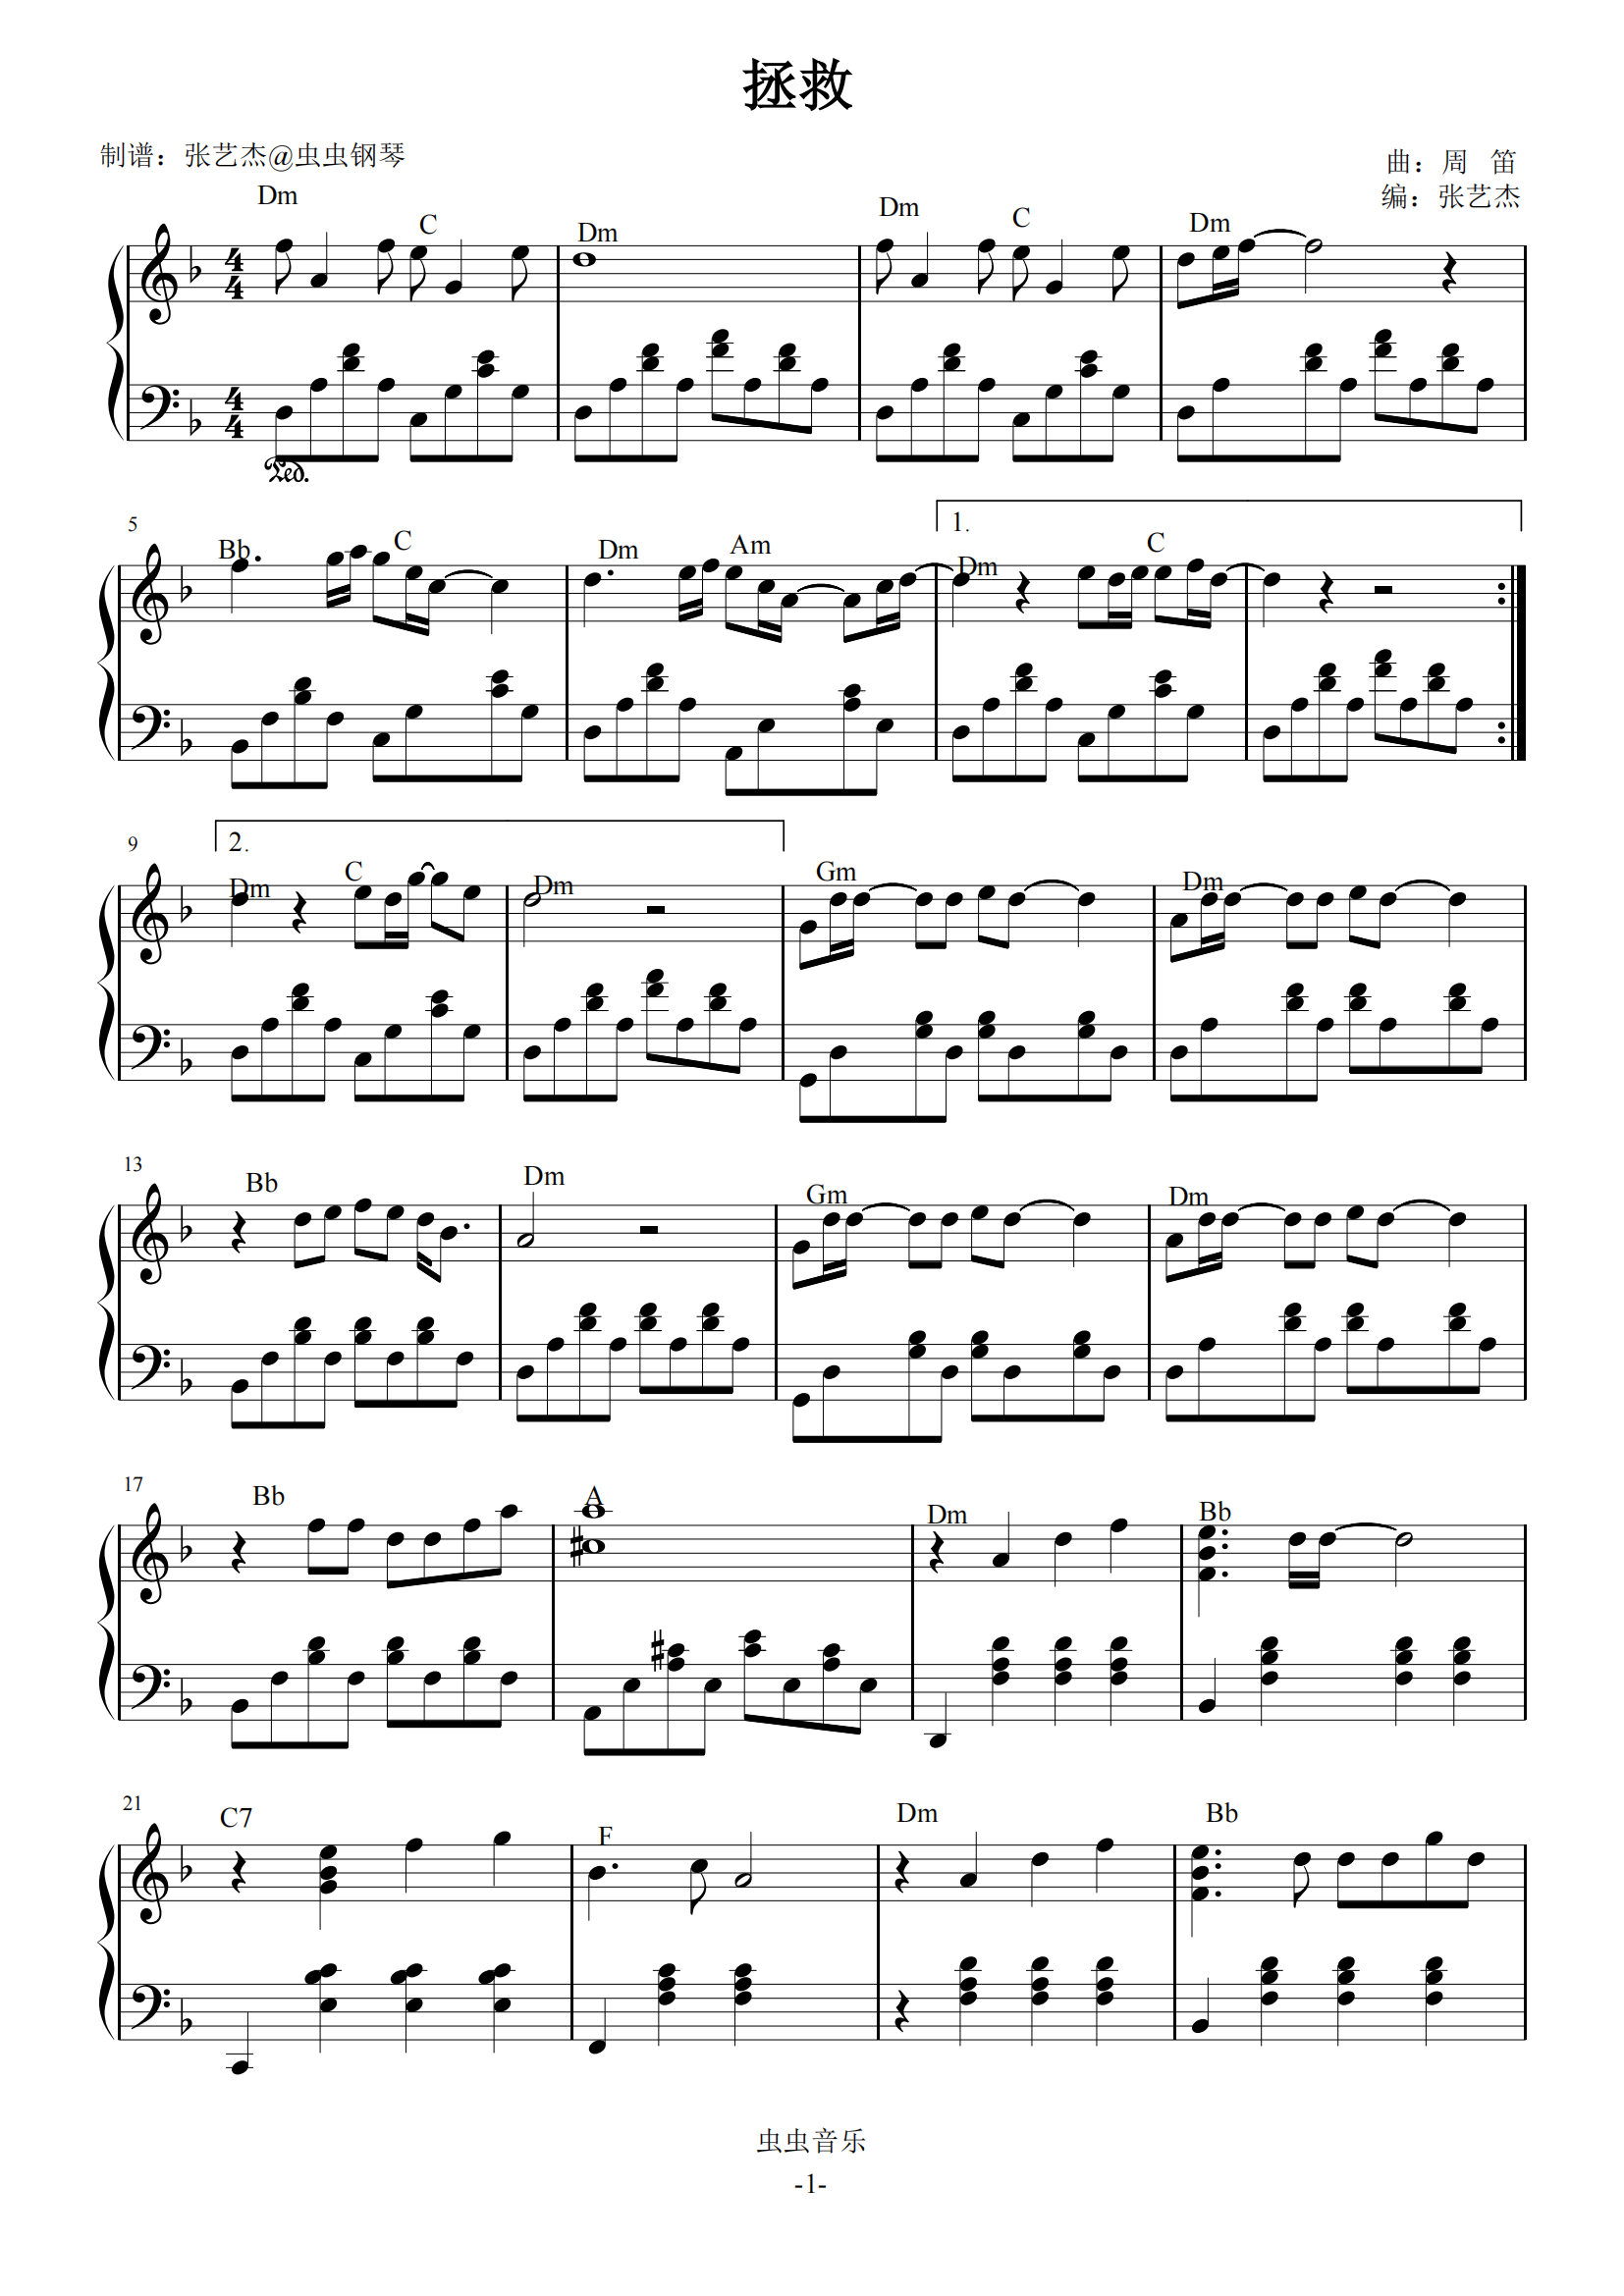 拯救-孙楠五线谱预览2-钢琴谱文件（五线谱、双手简谱、数字谱、Midi、PDF）免费下载